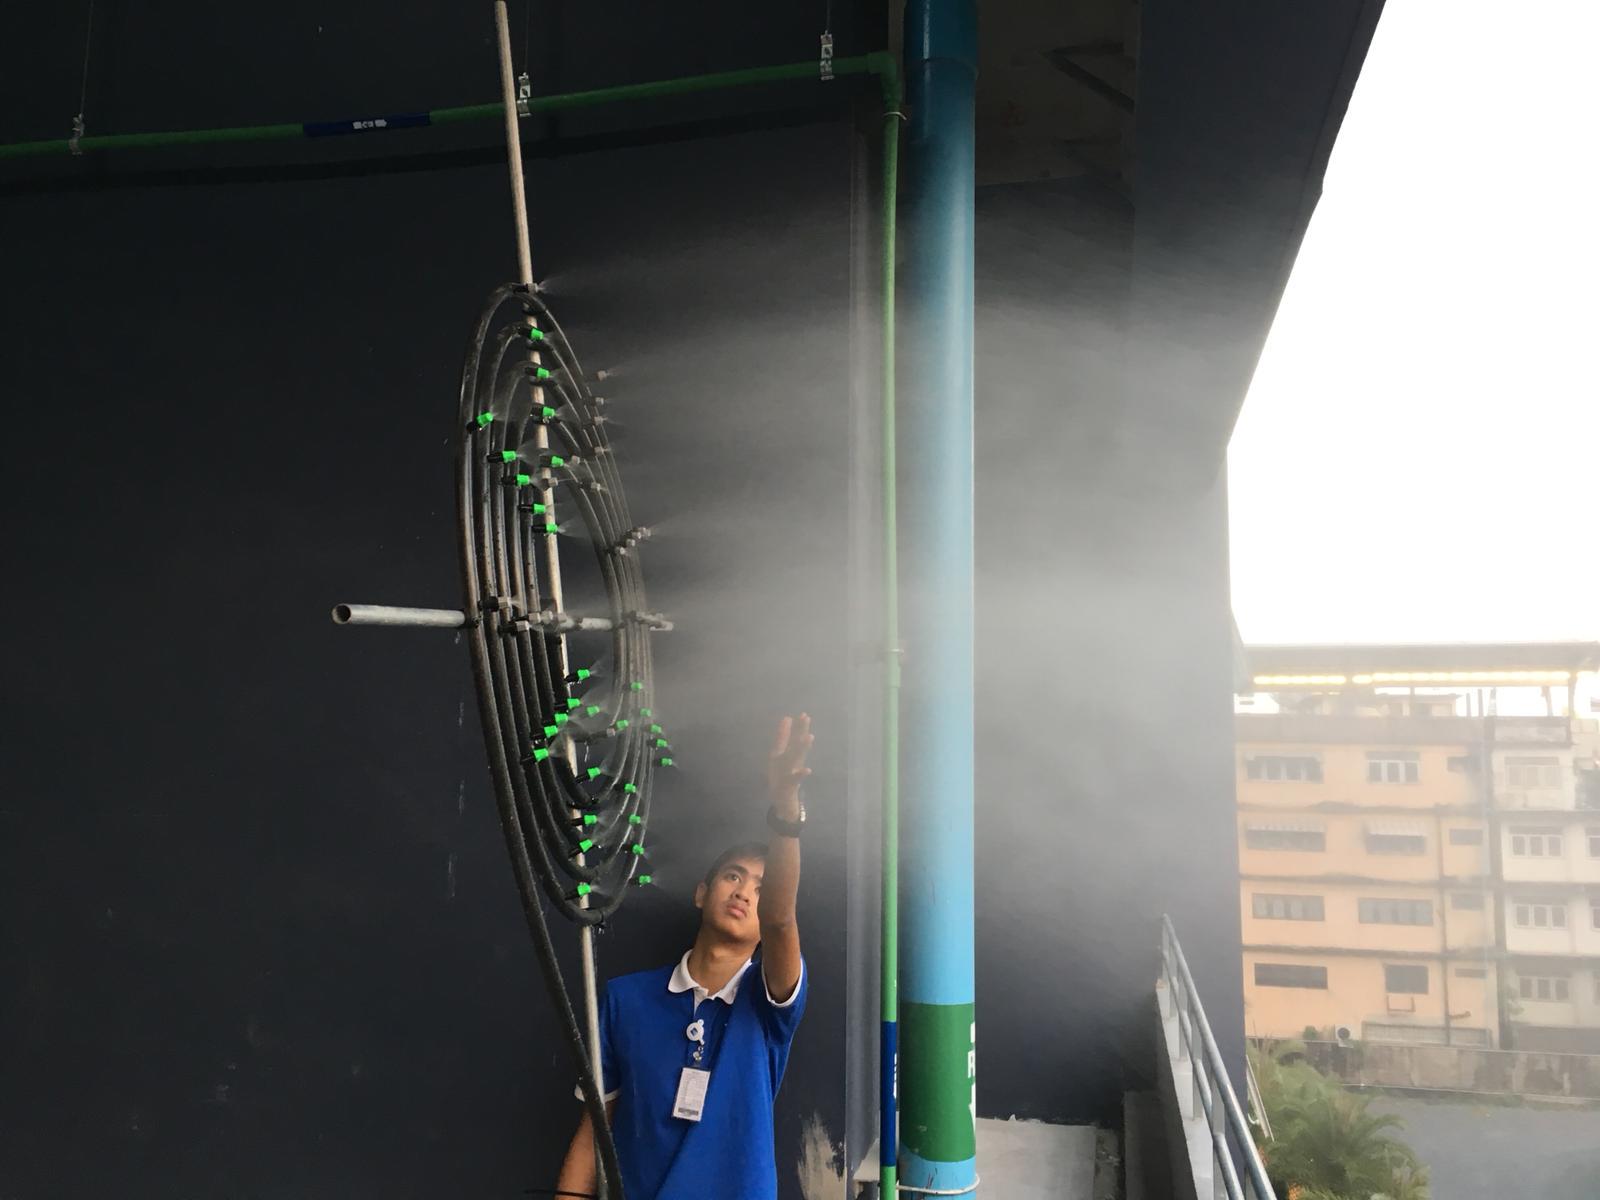 รูปบทความ LPN ลุยนำนิติ "ลุมพินี" 150 โครงการ ฉีดน้ำจากอาคารสูง ลดฝุ่น PM 2.5